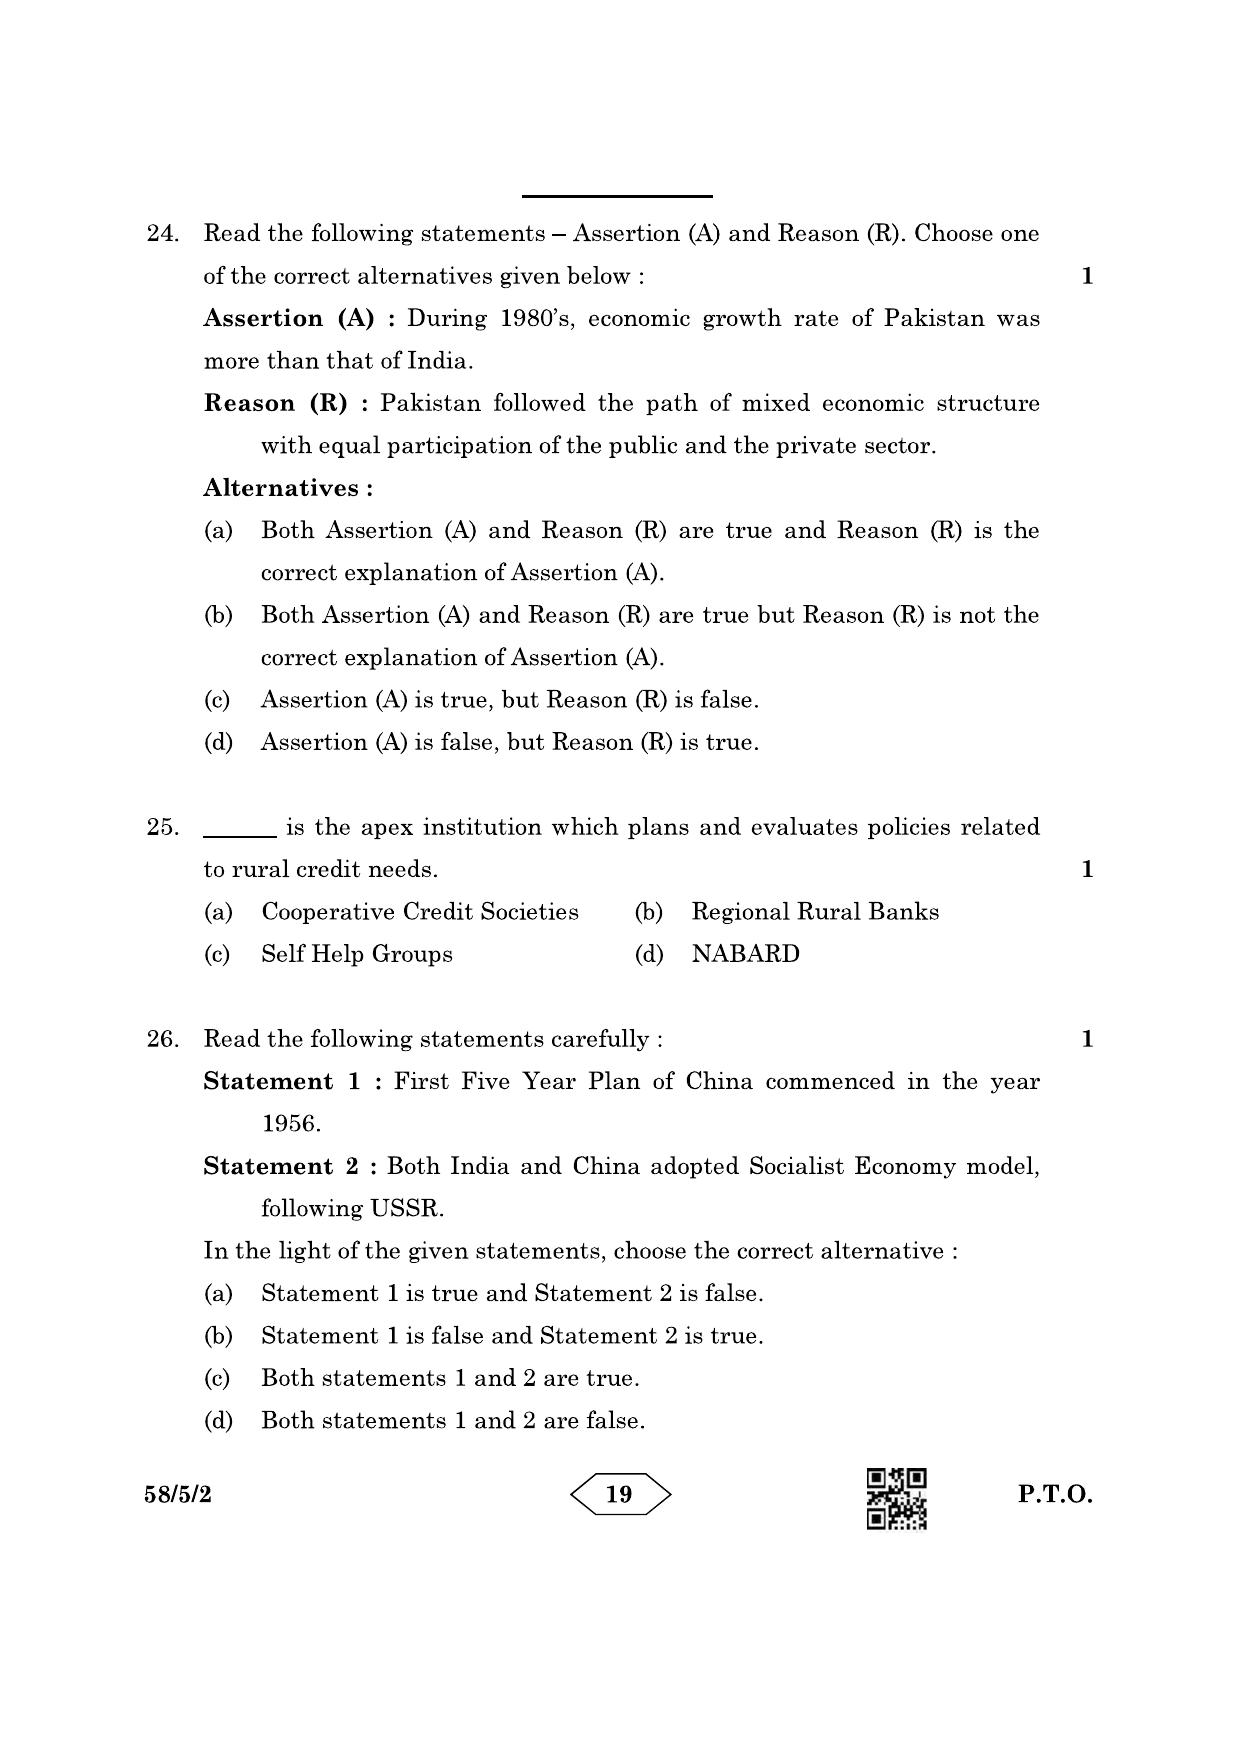 CBSE Class 12 58-5-2 Economics 2023 Question Paper - Page 19